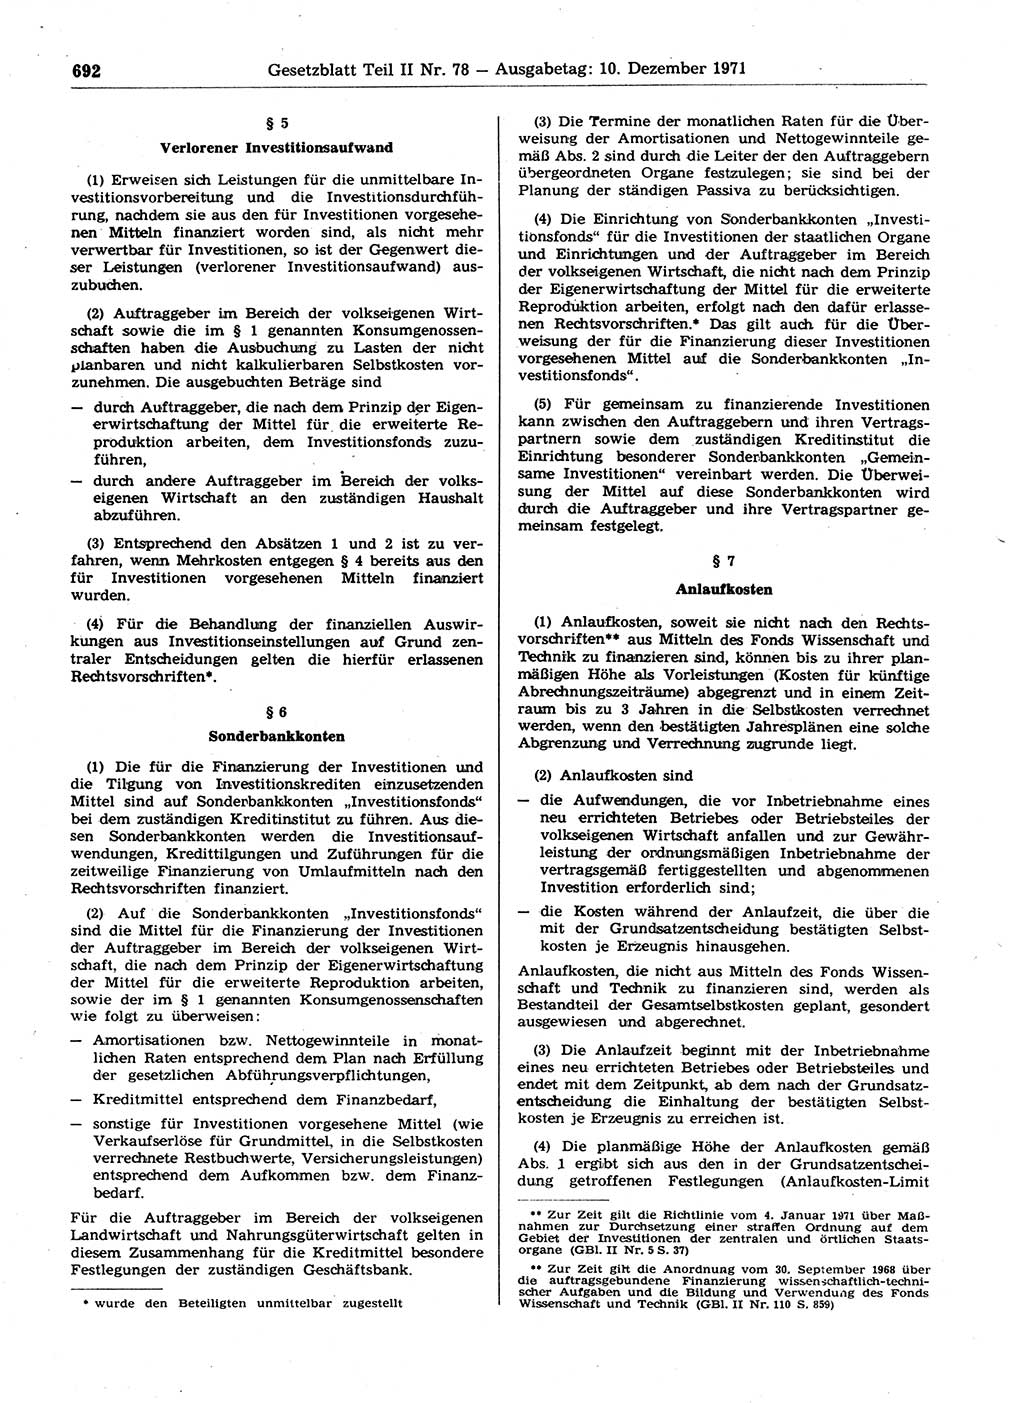 Gesetzblatt (GBl.) der Deutschen Demokratischen Republik (DDR) Teil ⅠⅠ 1971, Seite 692 (GBl. DDR ⅠⅠ 1971, S. 692)